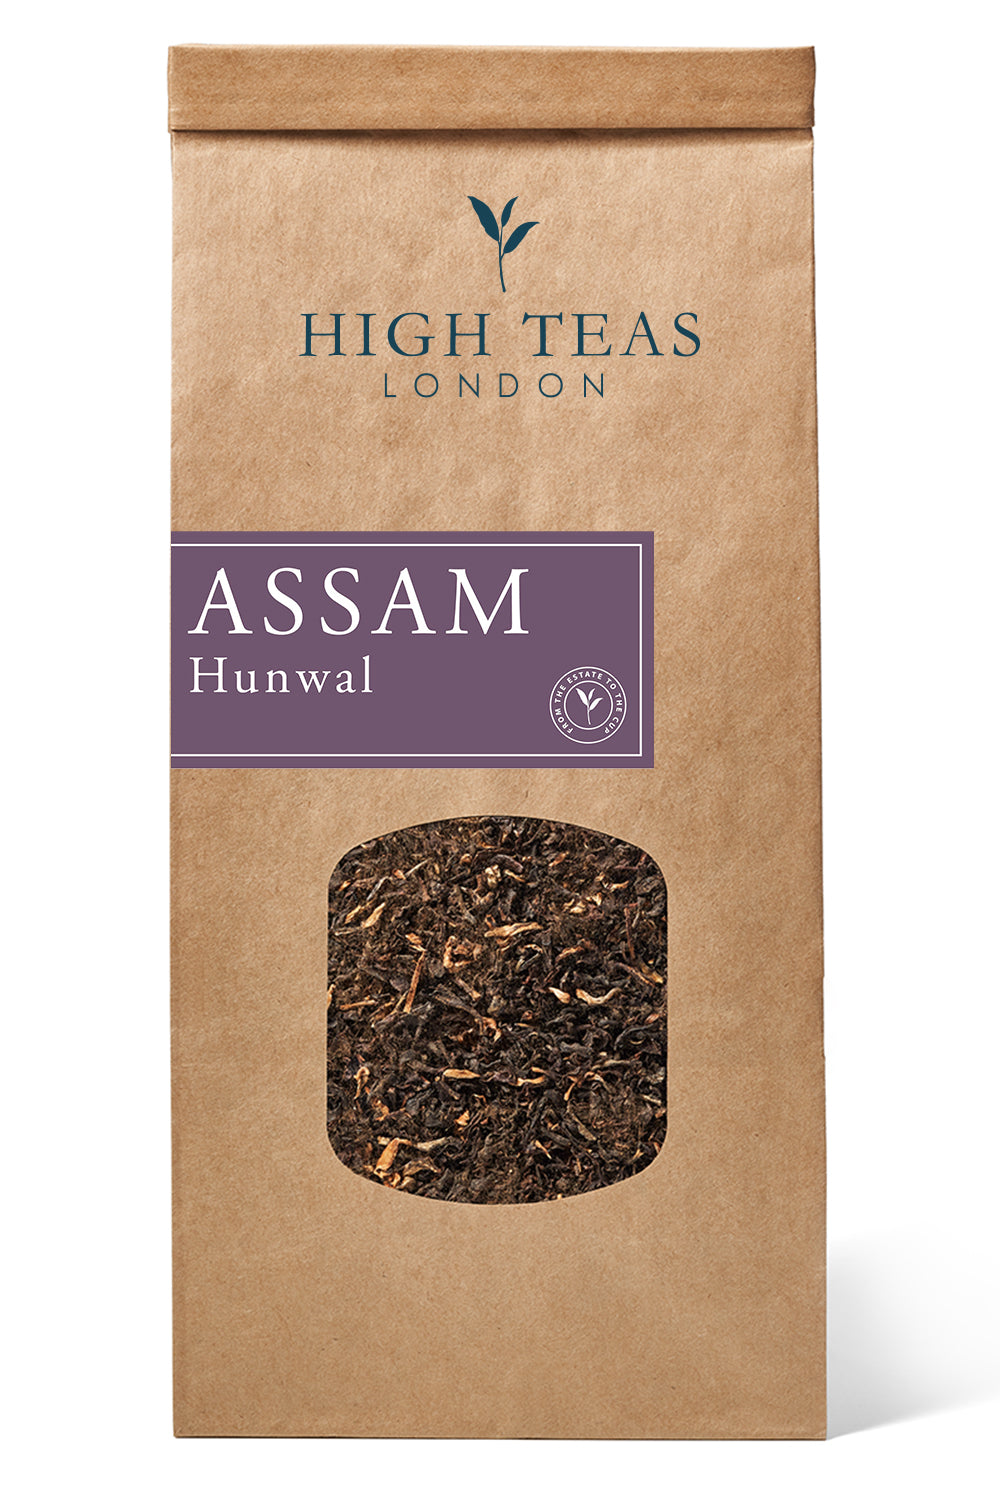 Assam Hunwal 2nd flush-250g-Loose Leaf Tea-High Teas